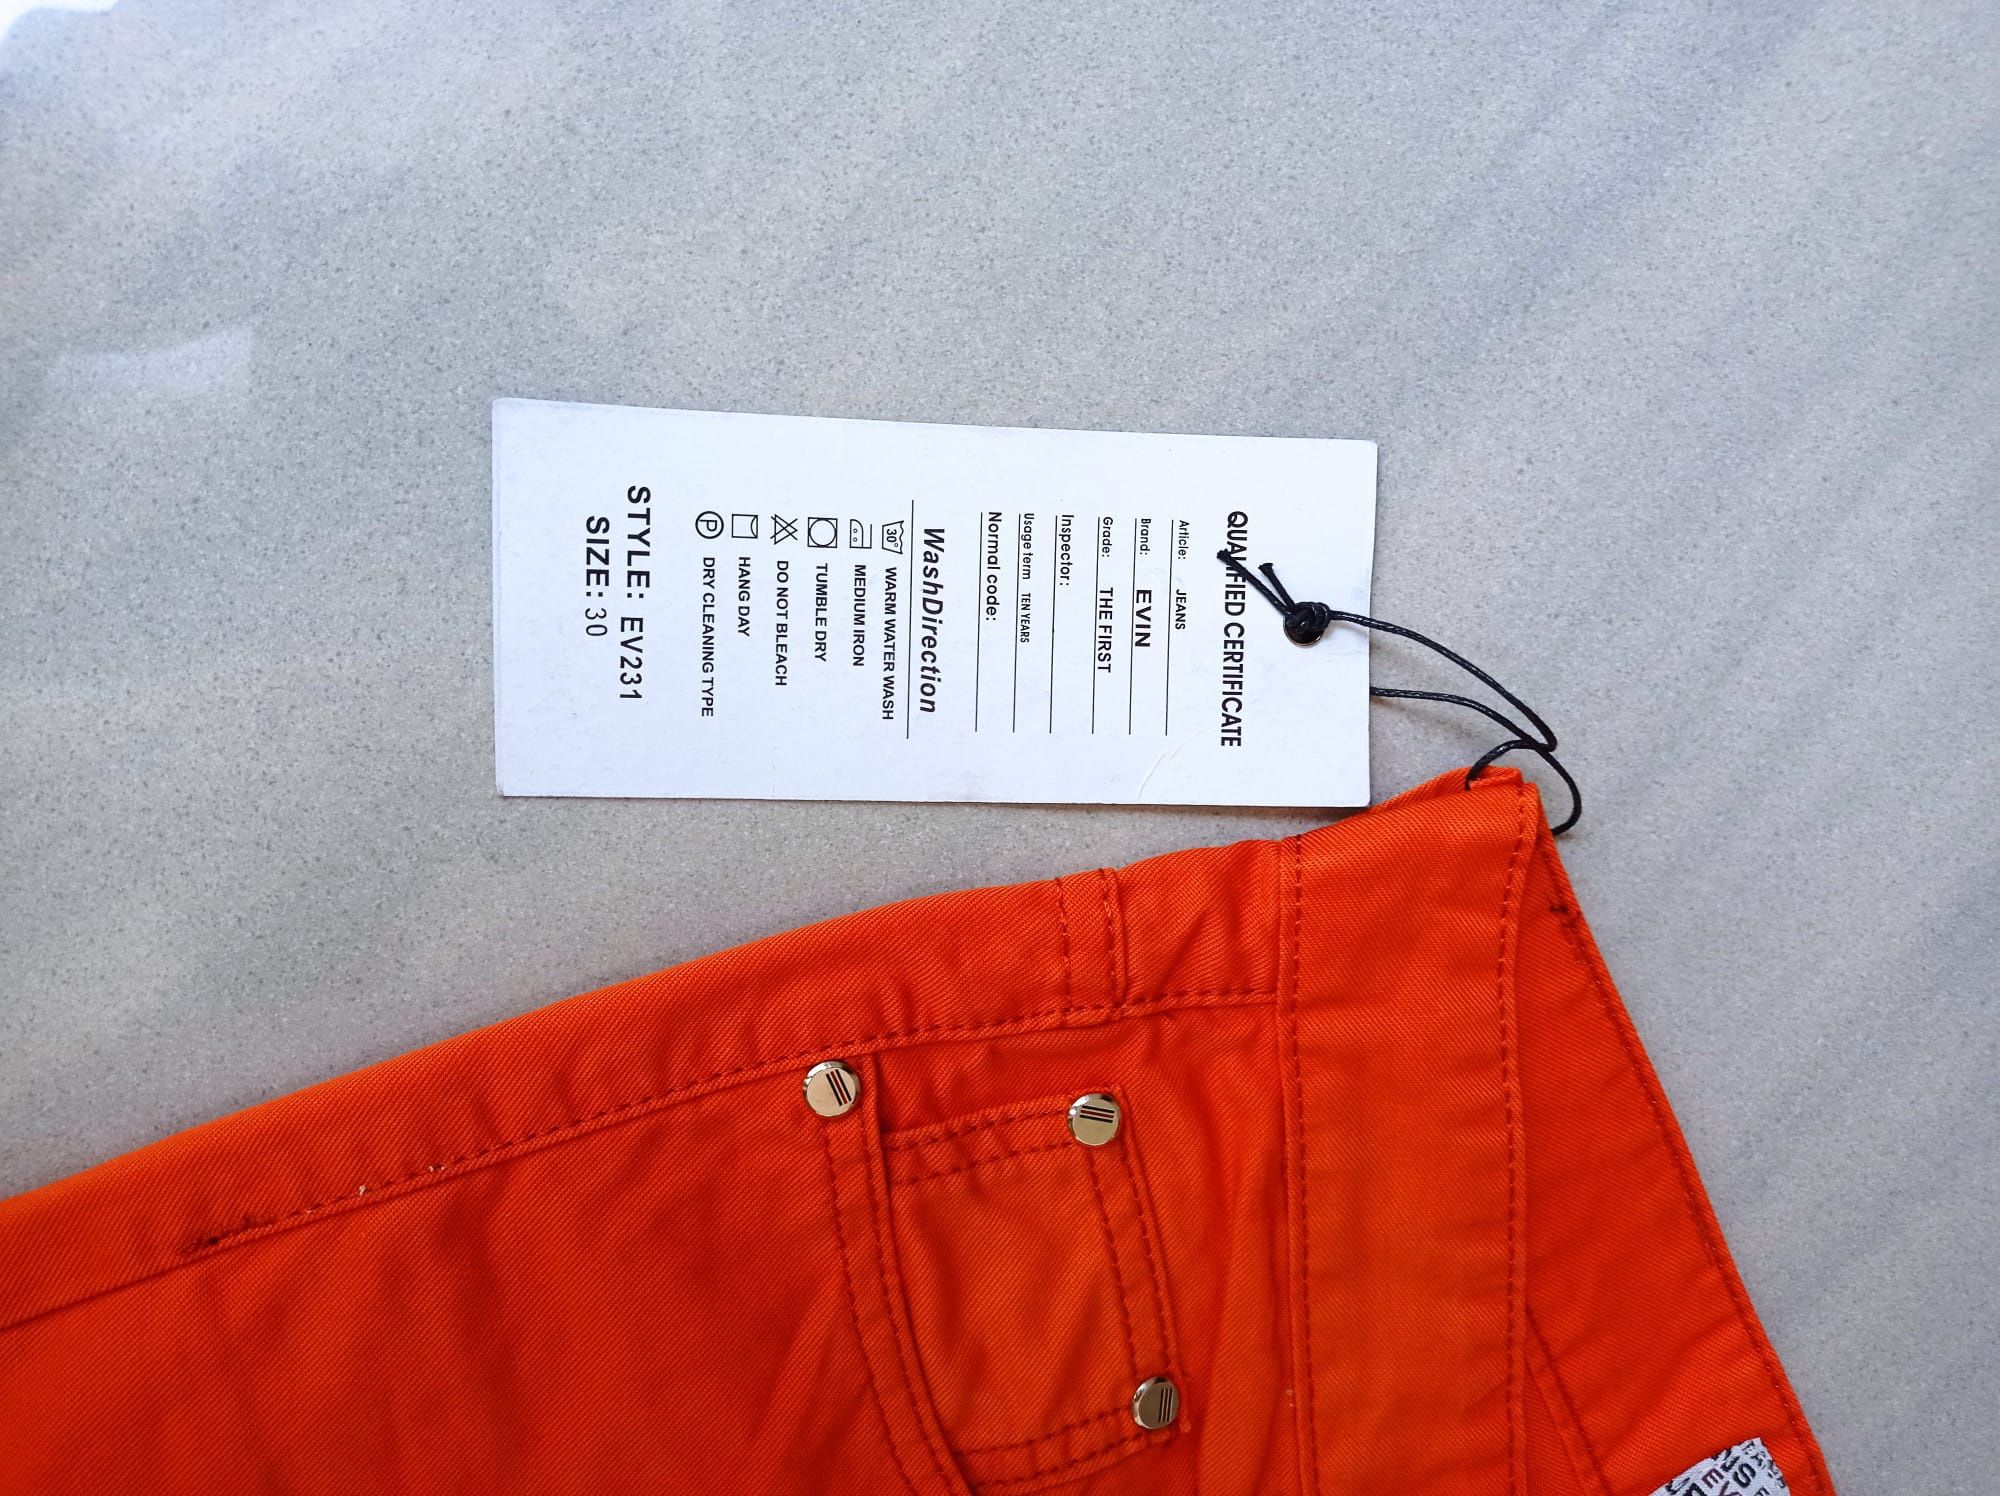 Nowe męskie pomarańczowe spodnie rozmiar 30